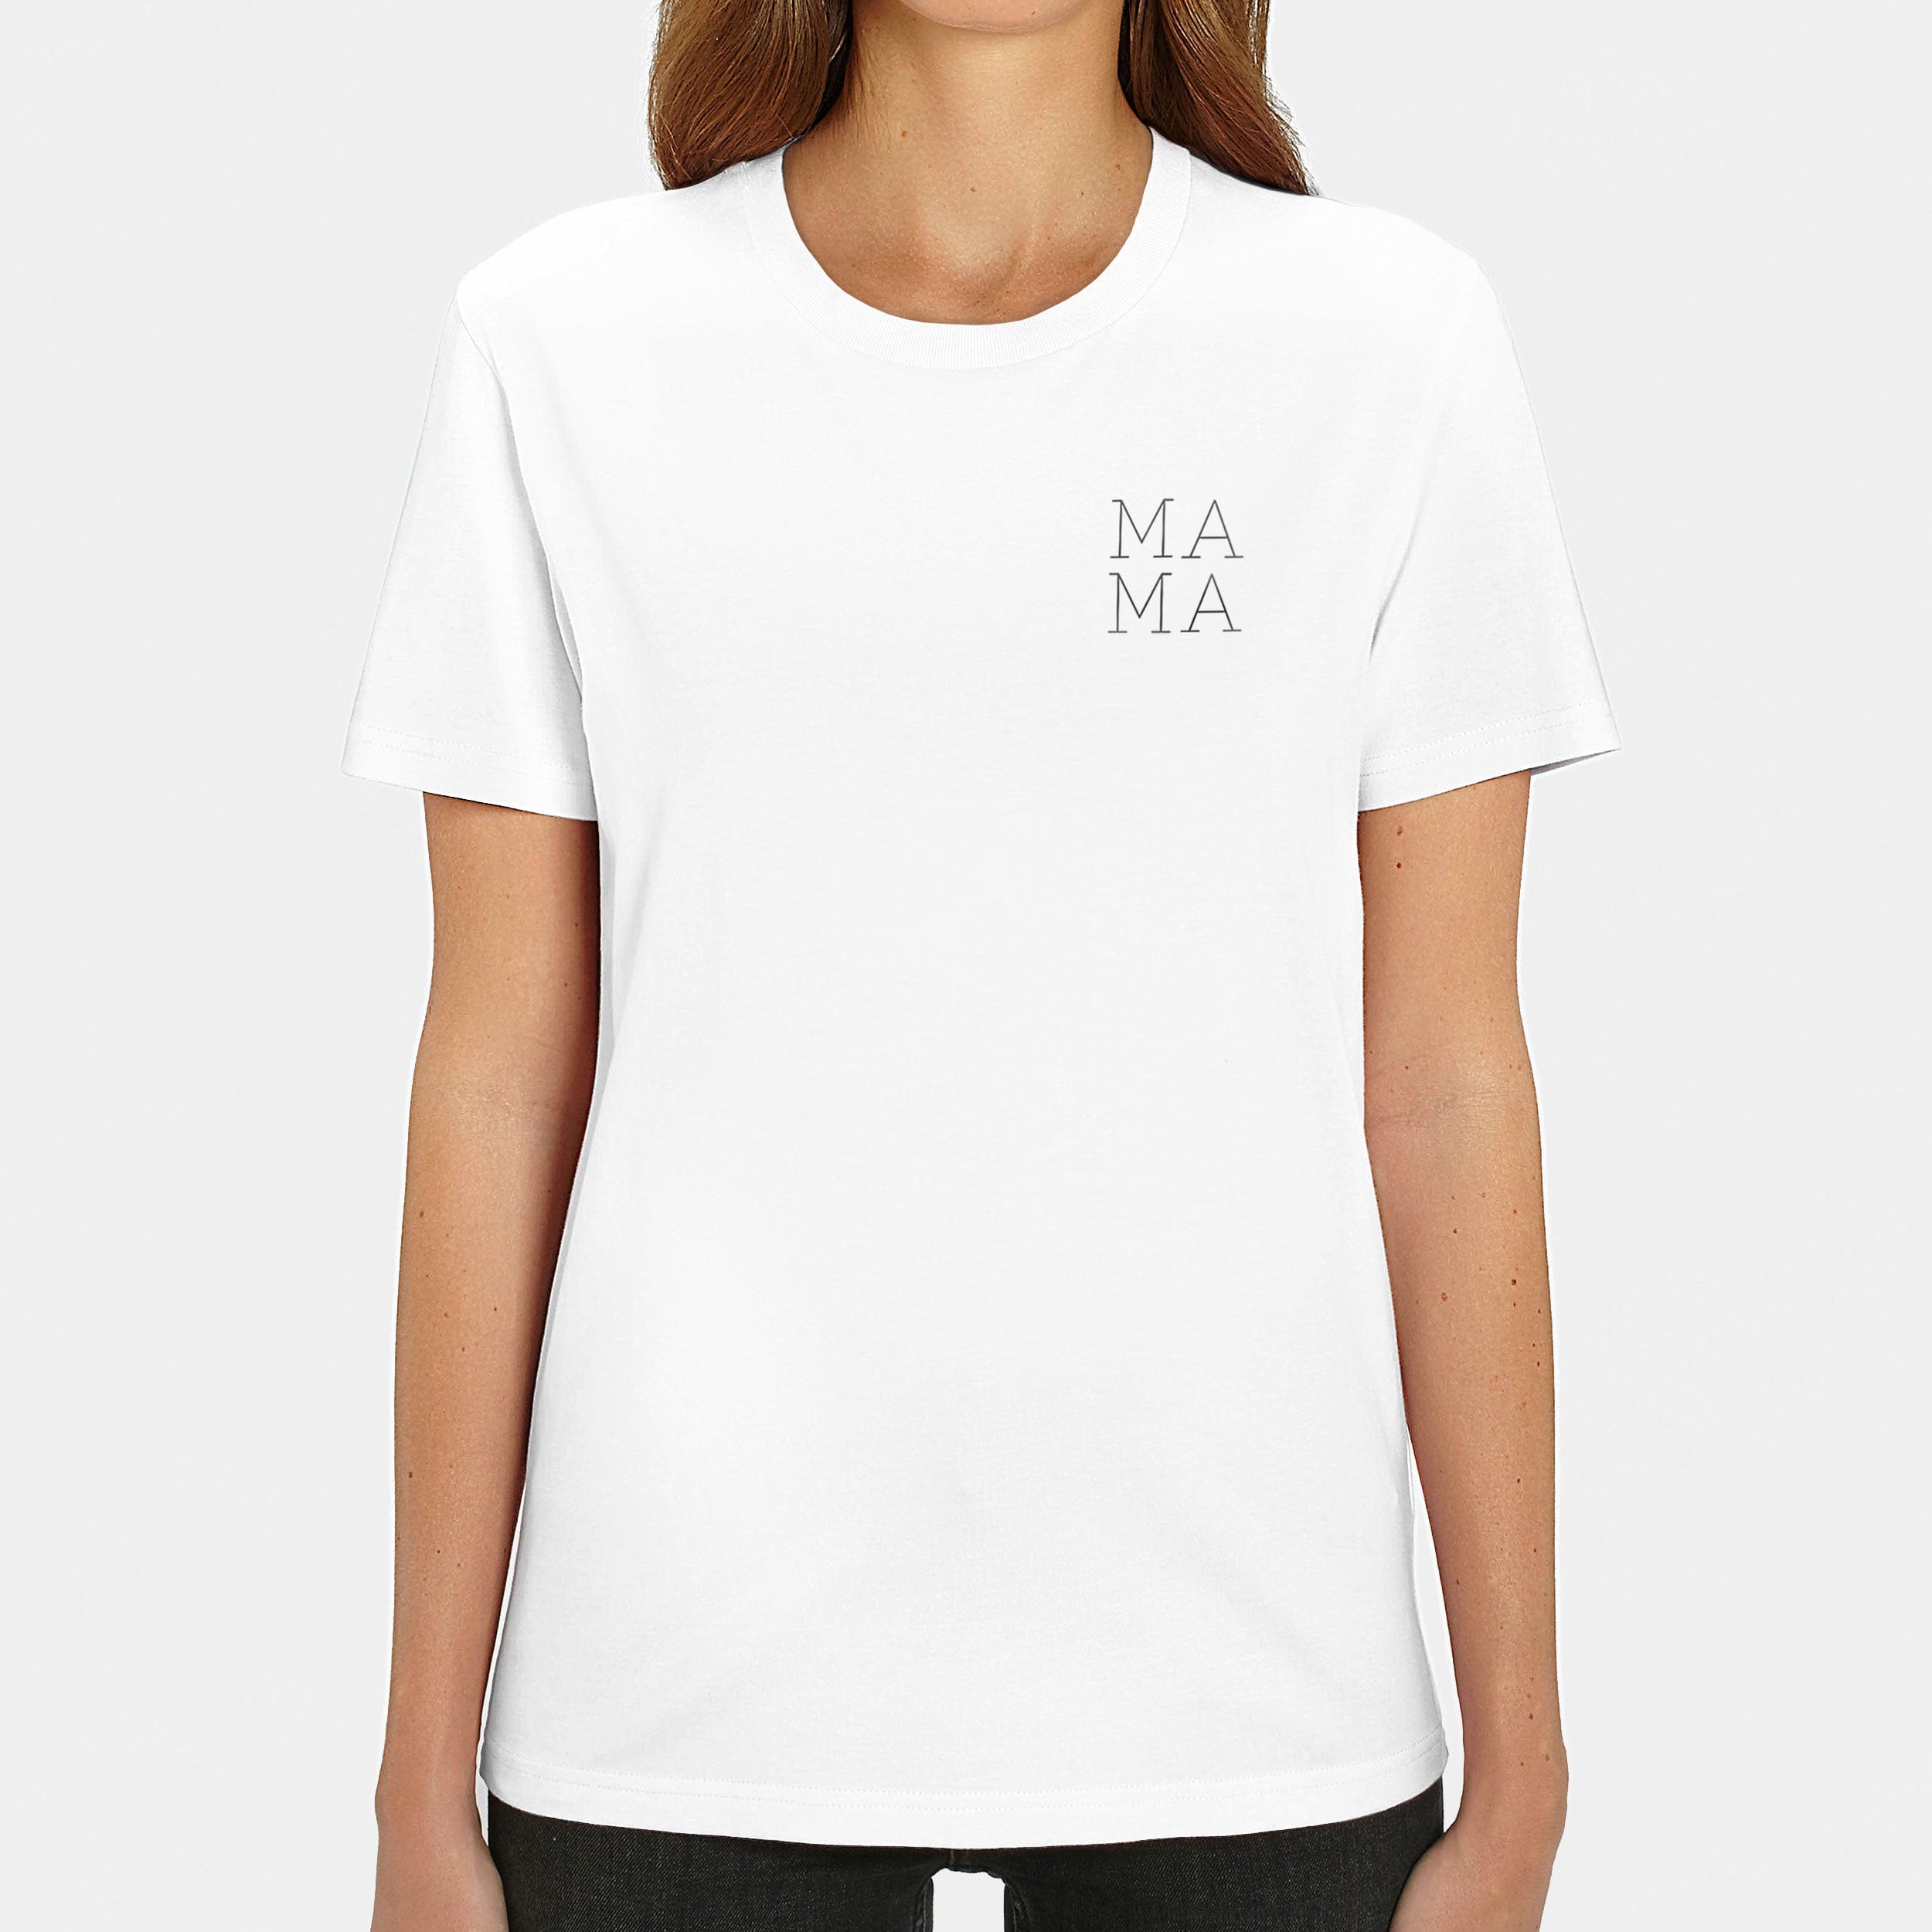 HEITER & LÄSSIG T-Shirt "Mama" XXS / weiß - aus nachhaltiger und fairer Produktion